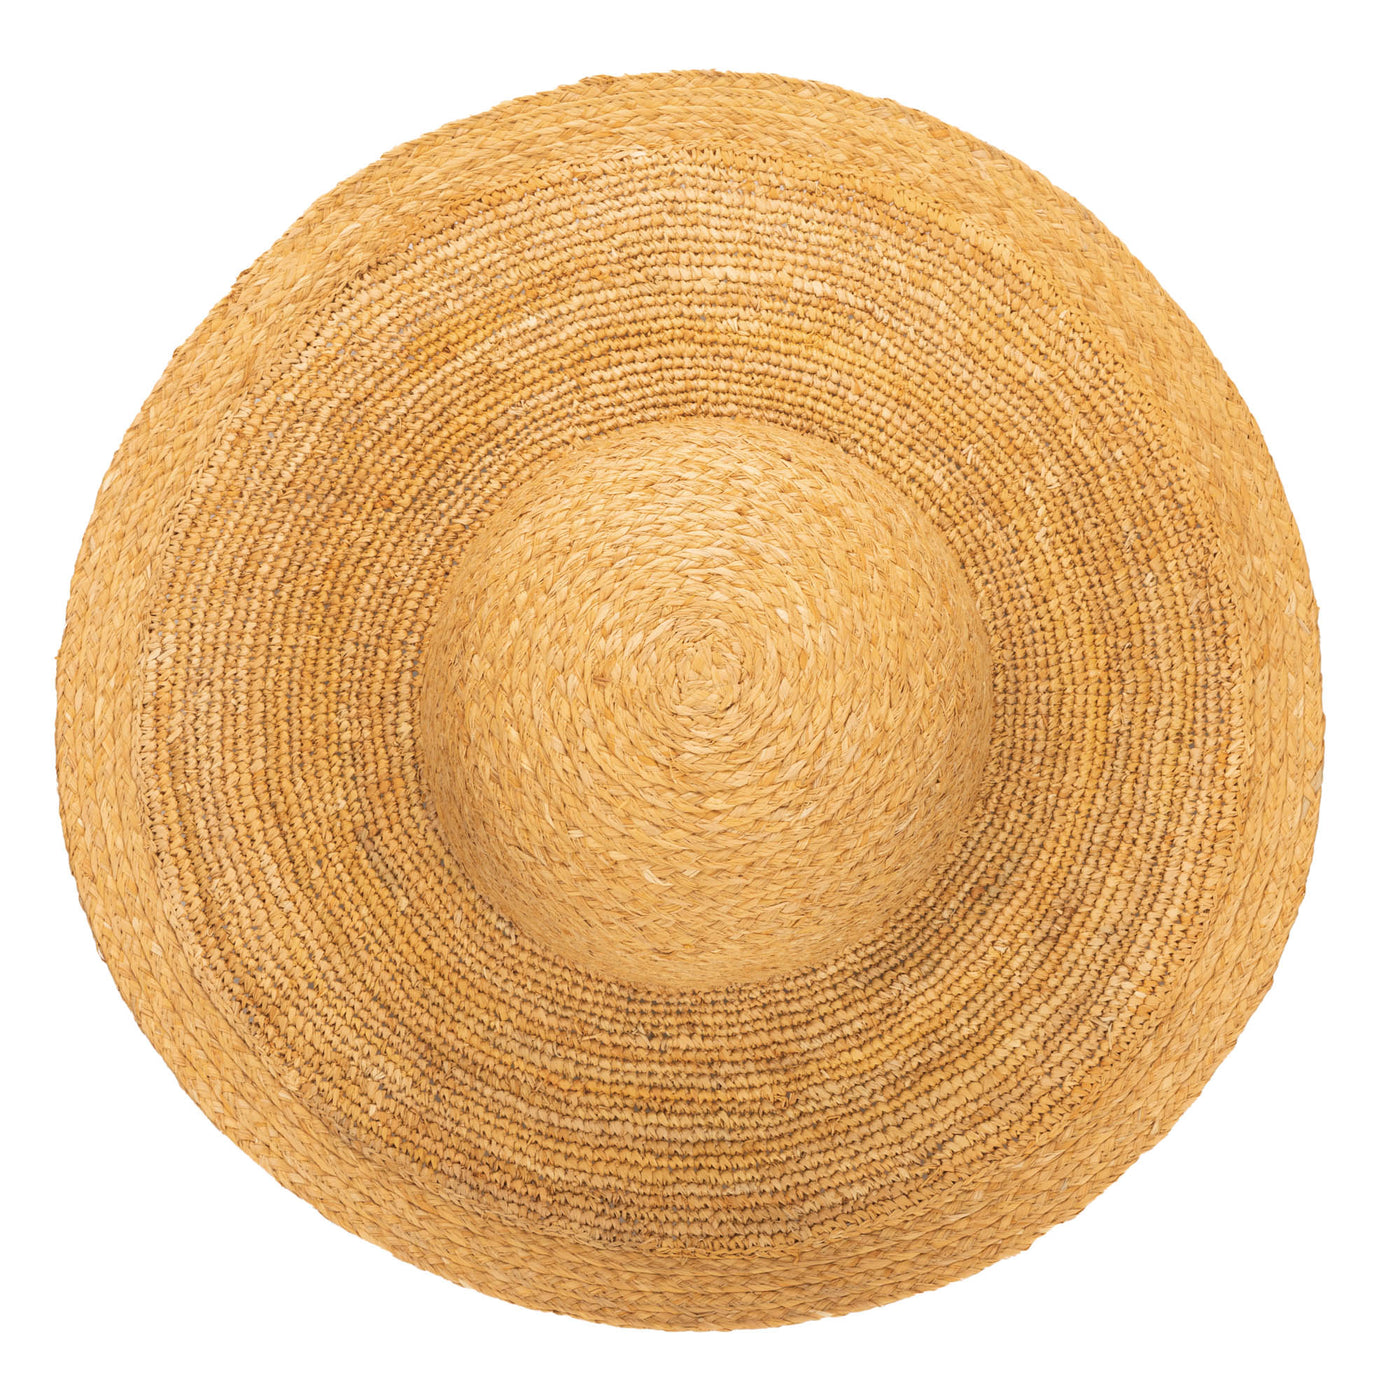 Elegant - Raffia Braid Round Crown Sun Hat-FLOPPY-San Diego Hat Company